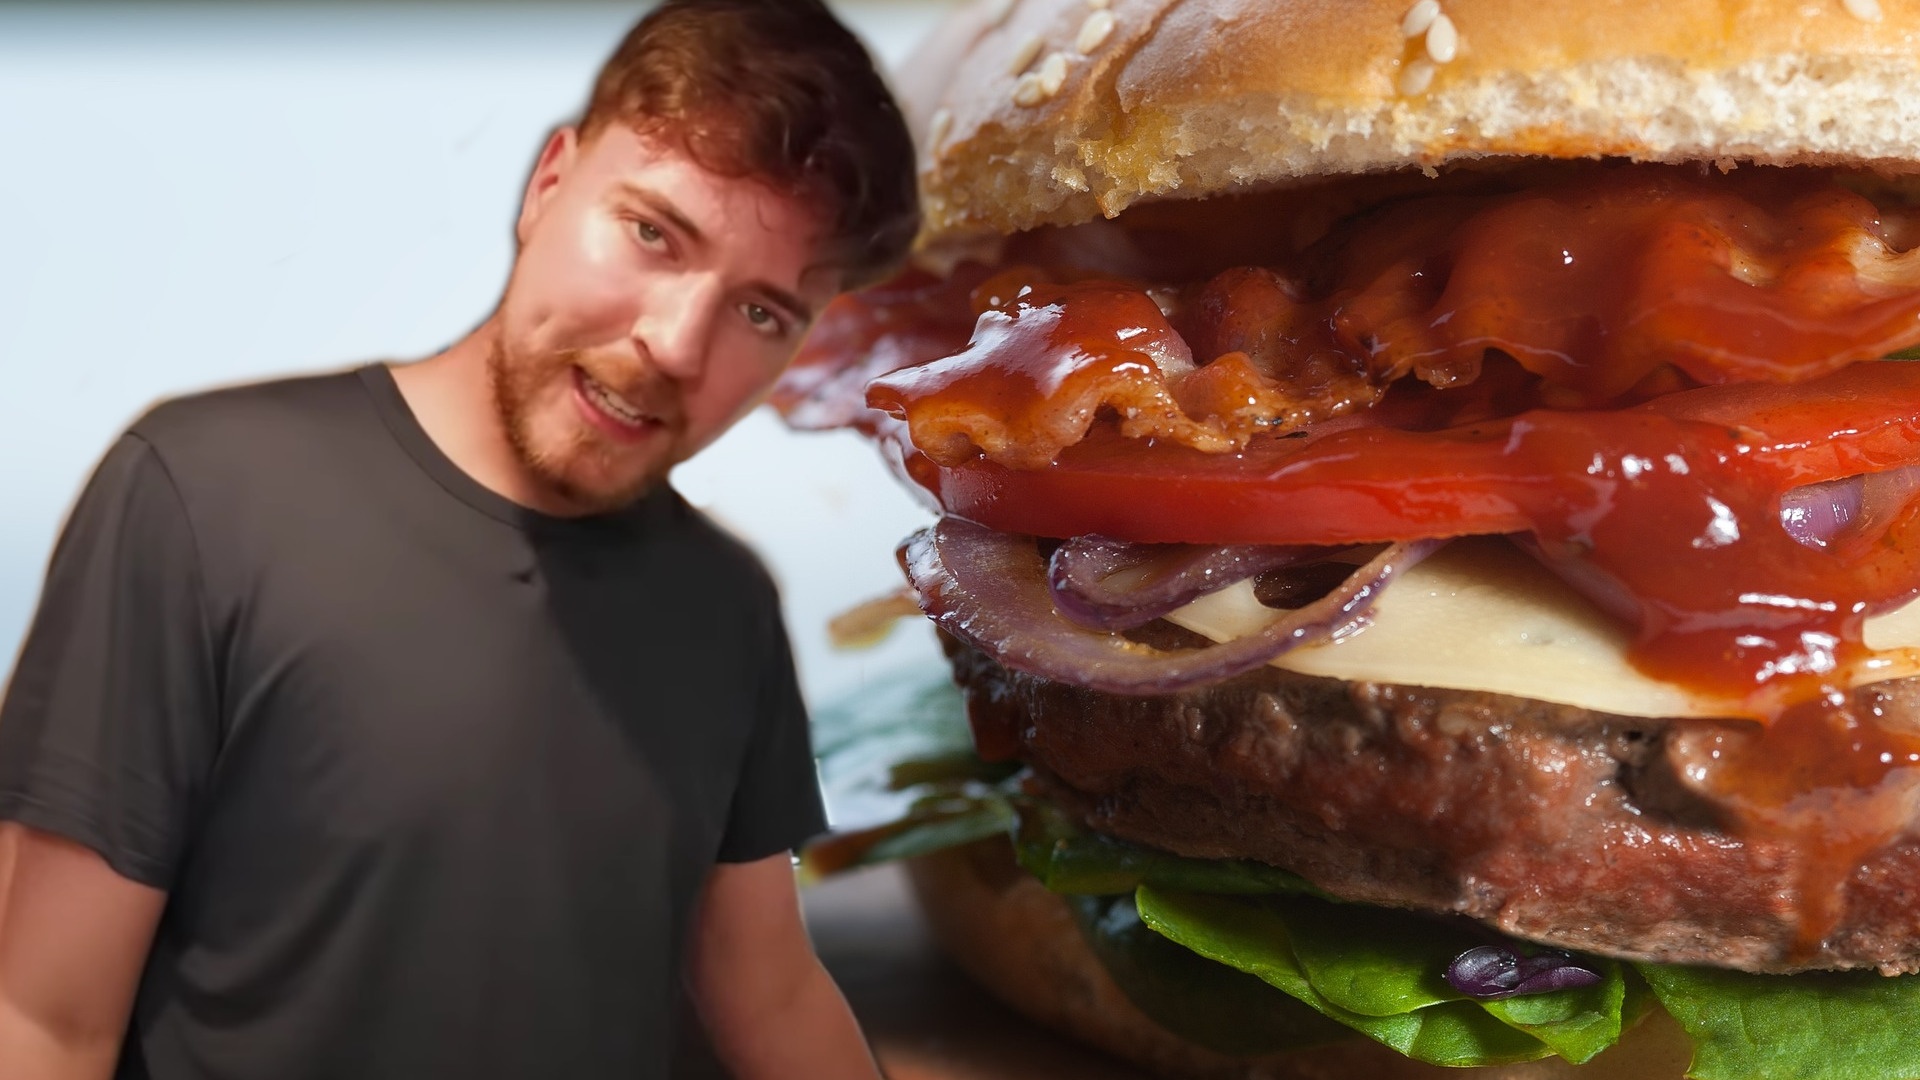 #Einer der größten YouTube-Stars wird auf 100 Millionen Dollar verklagt, weil er eigenen Burger kritisiert